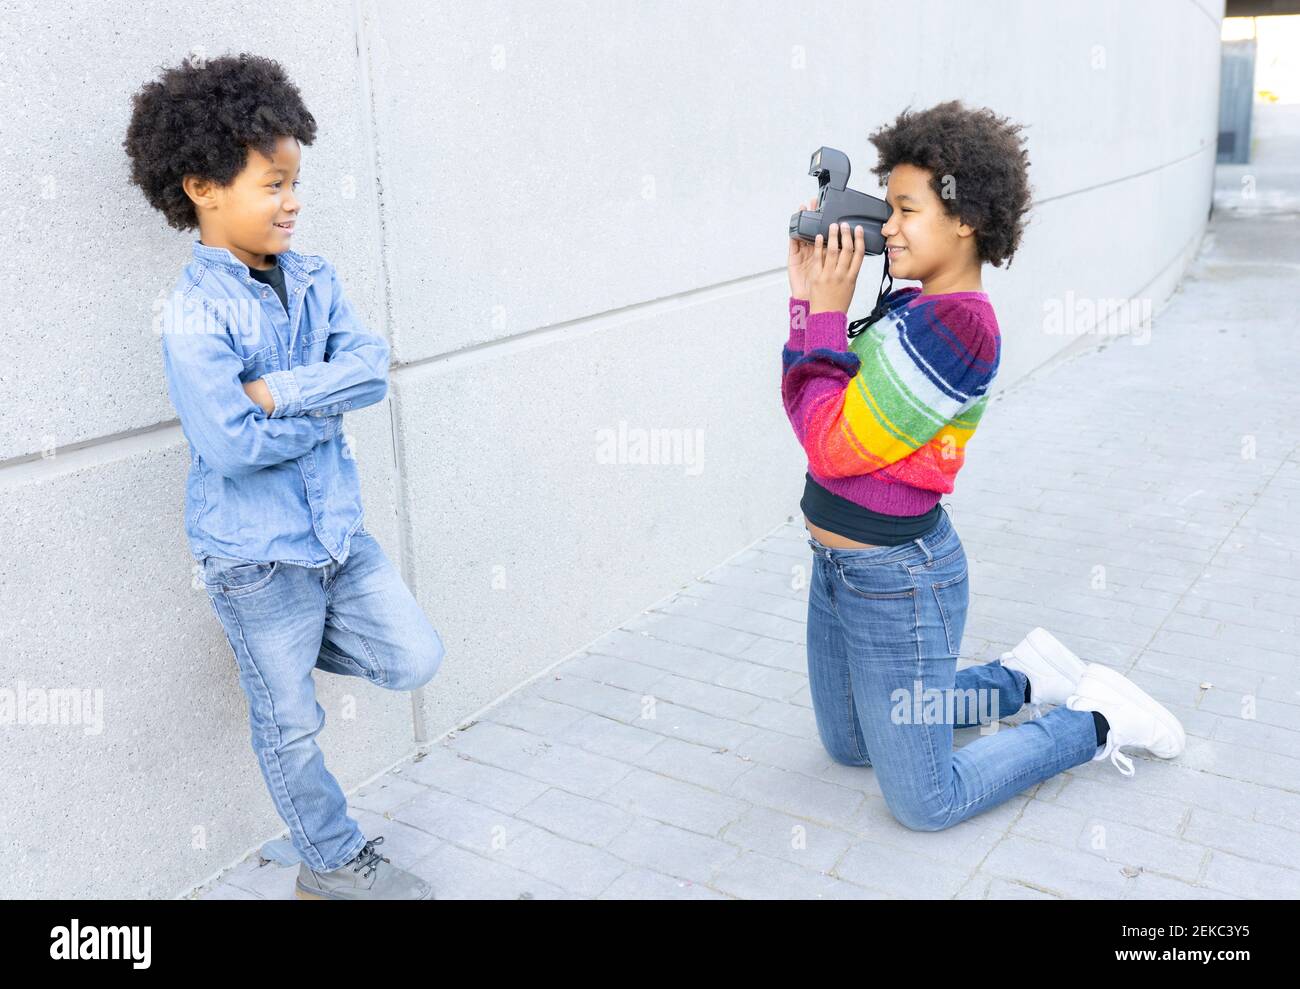 Schwester fotografiert Bruder durch die Kamera, während sie sich auf die Knie kniet Fußweg Stockfoto